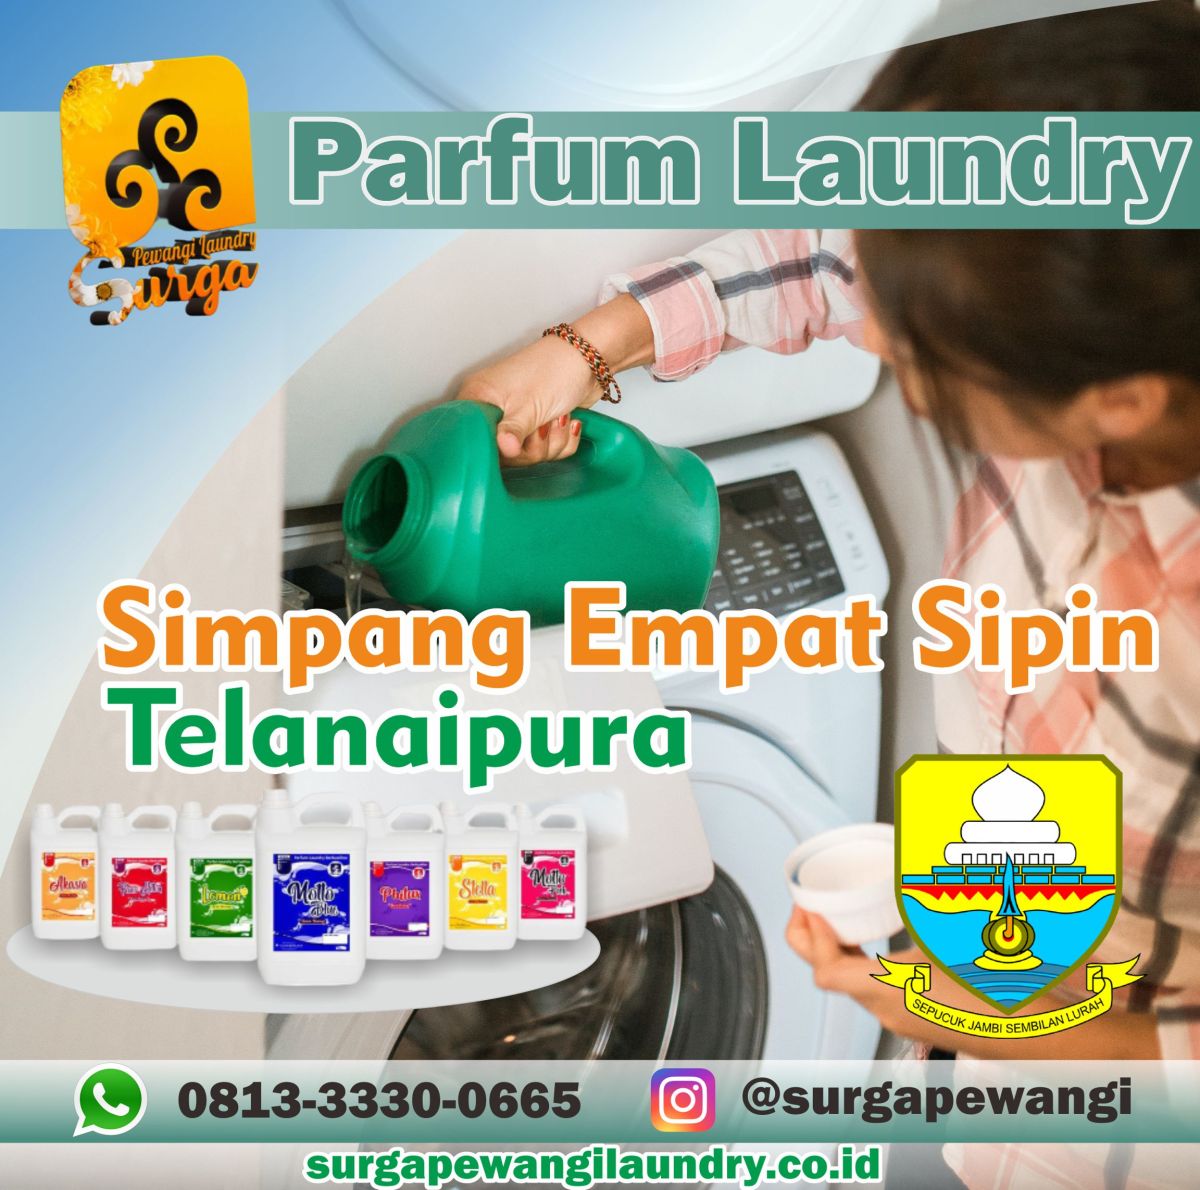 Parfum Laundry Simpang Emapat Sipin, Telanaipura